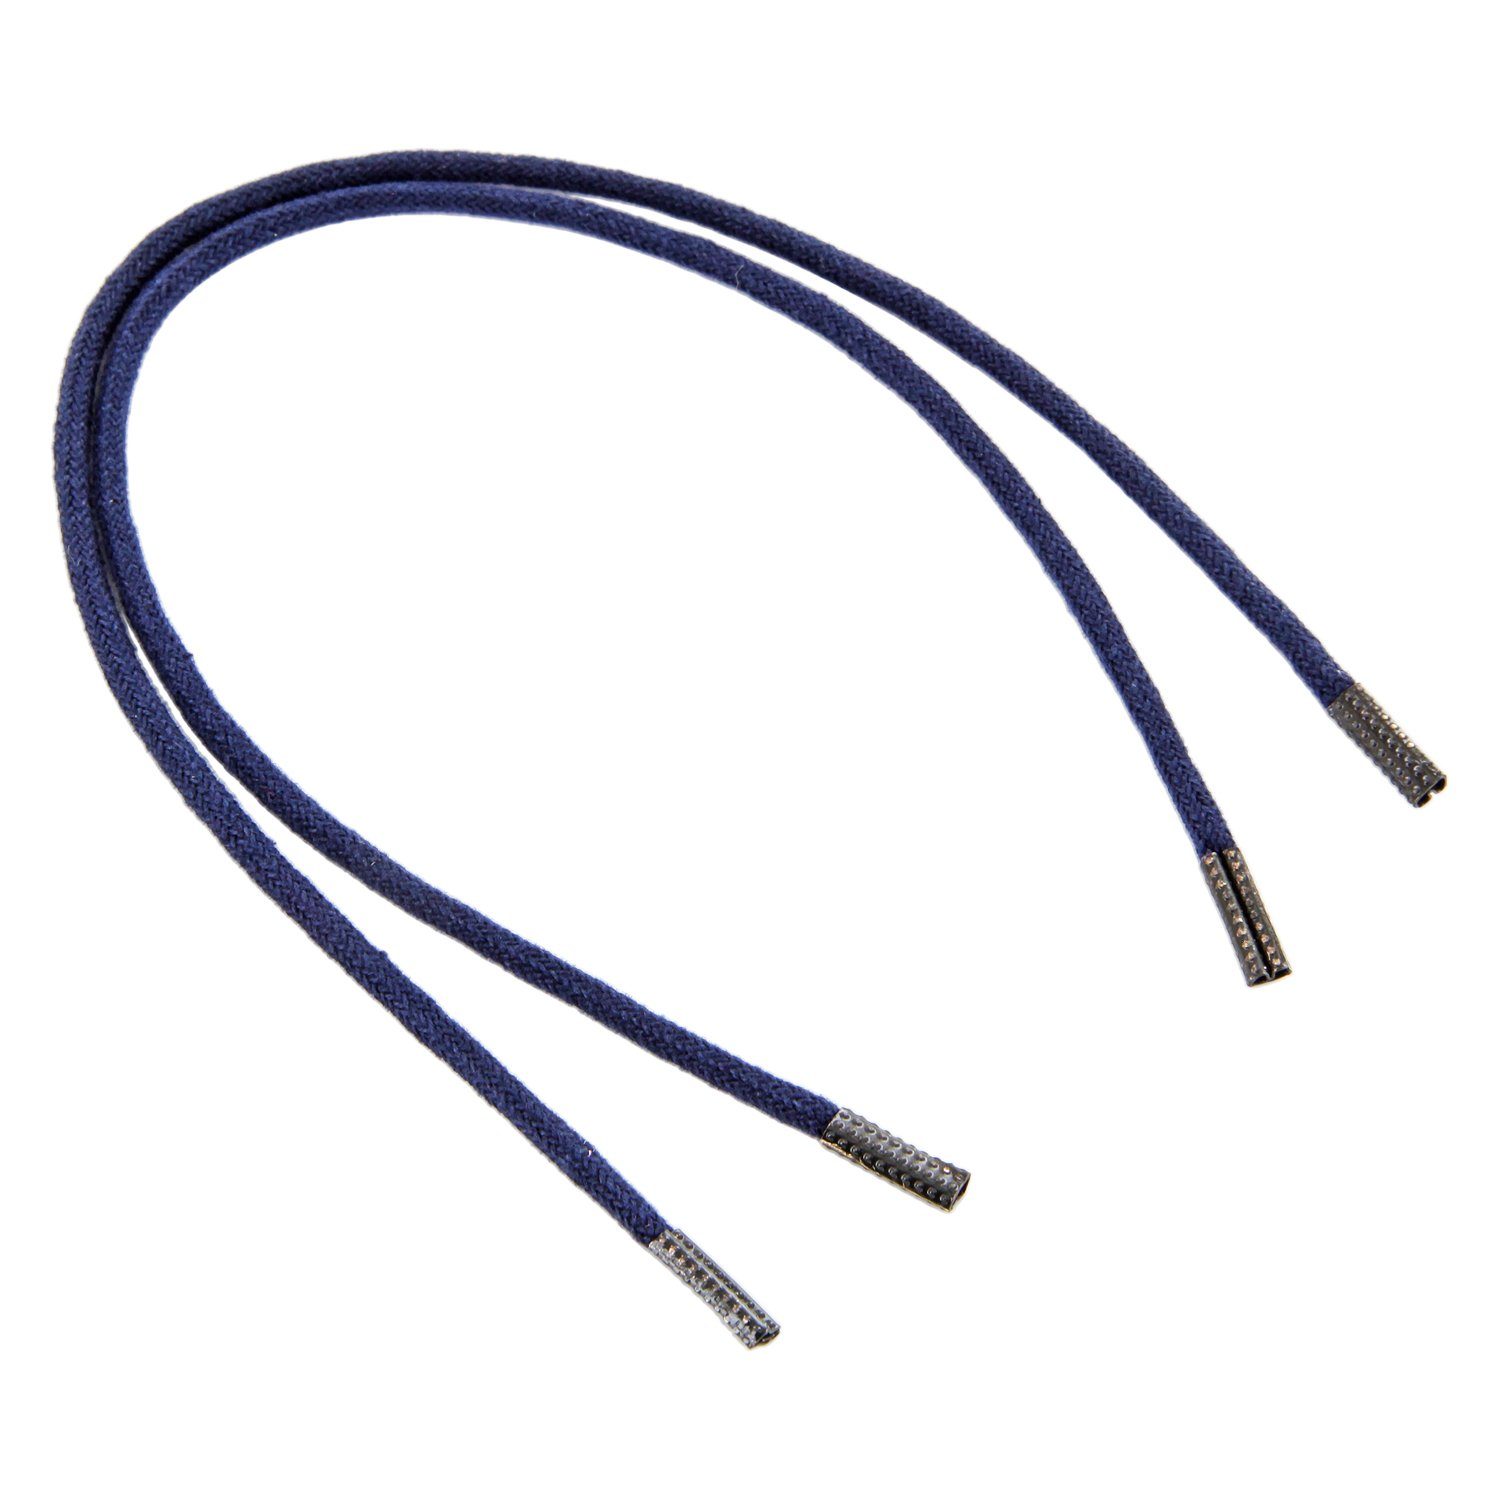 Rema Schnürsenkel Rema Schnürsenkel Marineblau - rund - ca. 2,5 mm dünn für Sie nach Wunschlänge geschnitten und mit Metallenden versehen